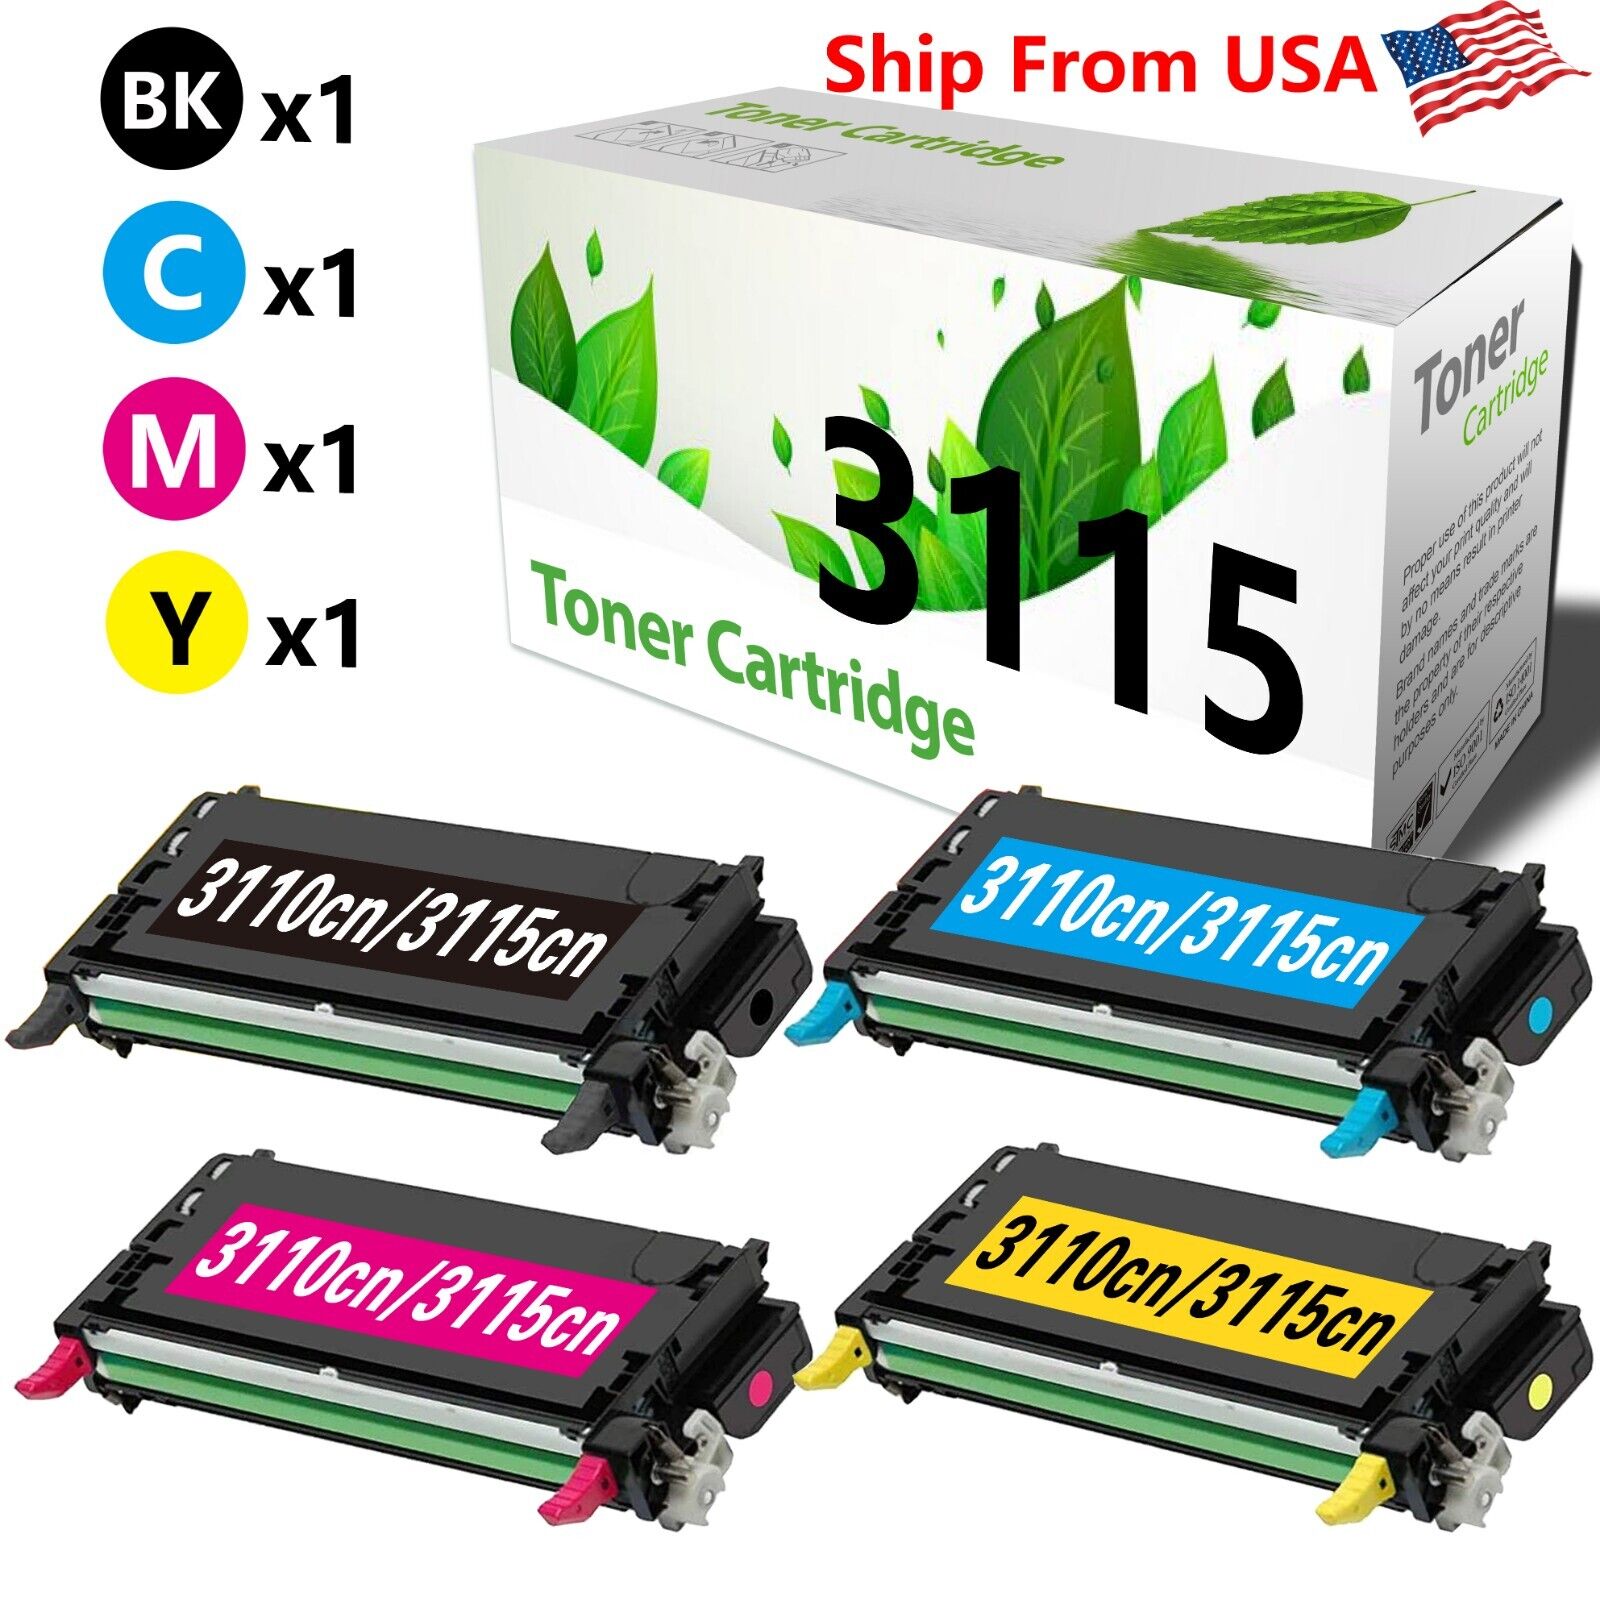 (4-Pack,BCMY) 3115CN 3110CN Toner Cartridge for 3115 3110 Laser Printer